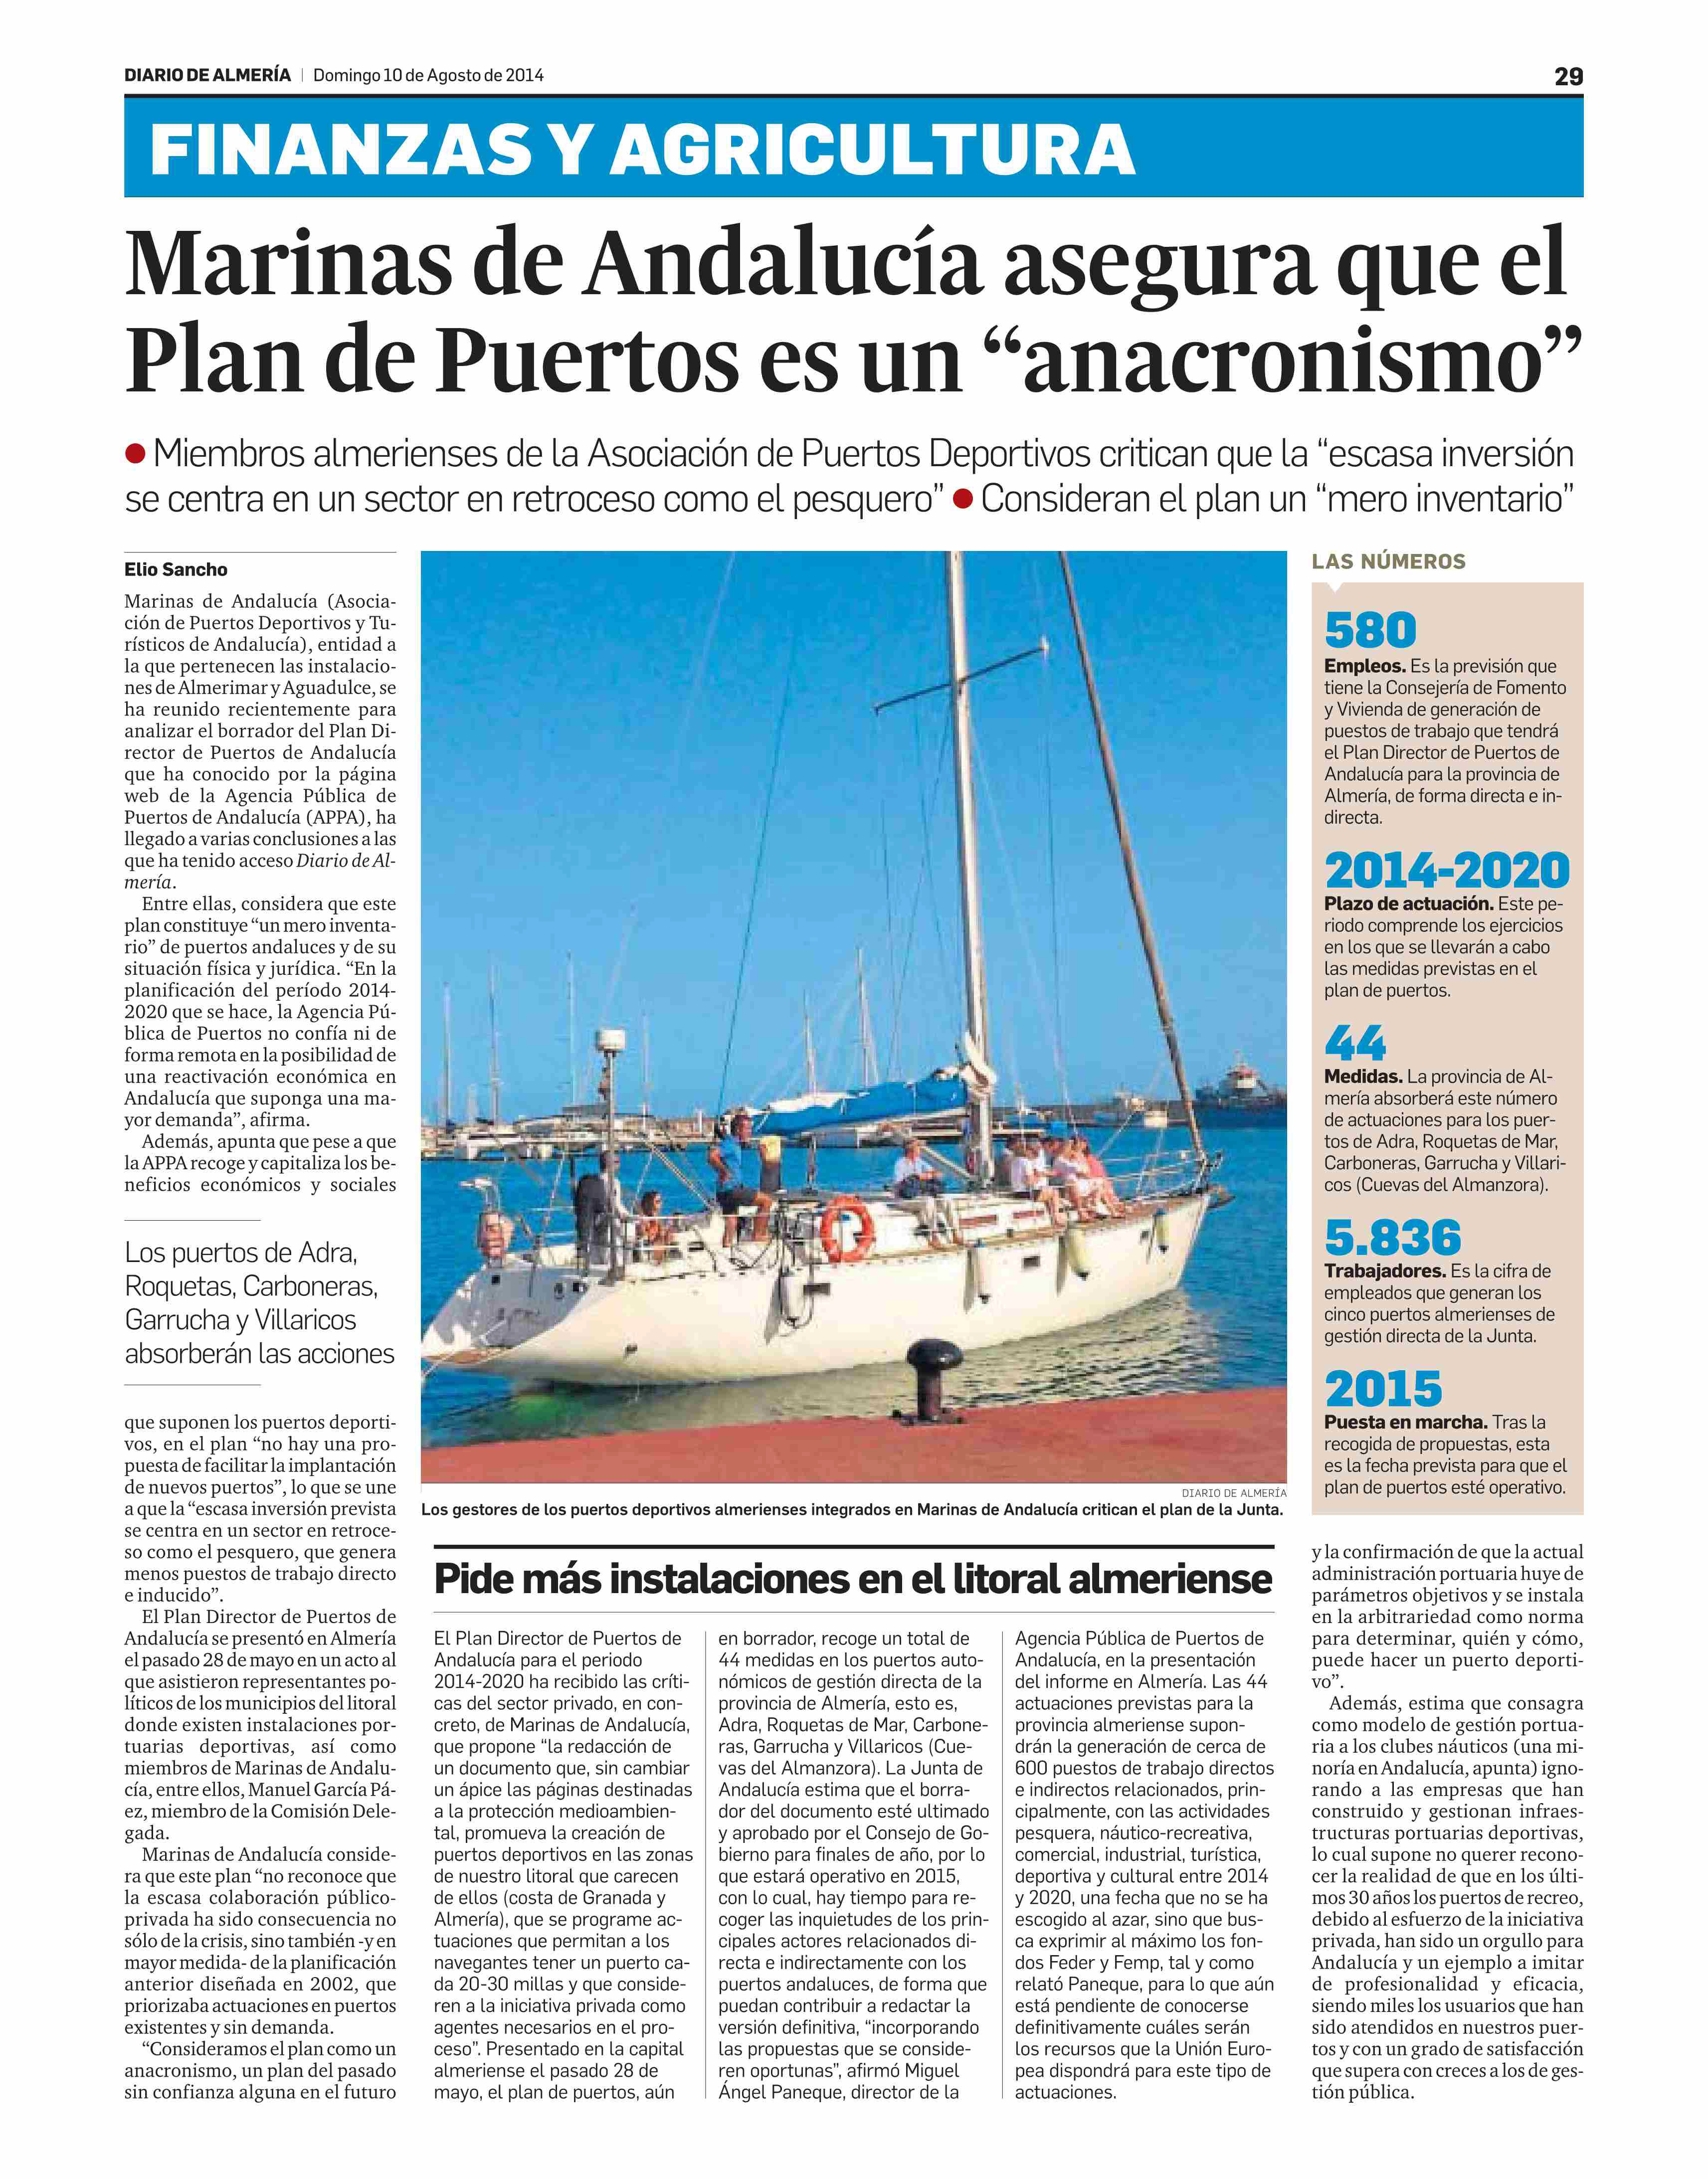 El Diario de Almería recoge la opinión de Marinas de Andalucía sobre el Plan de Puertos